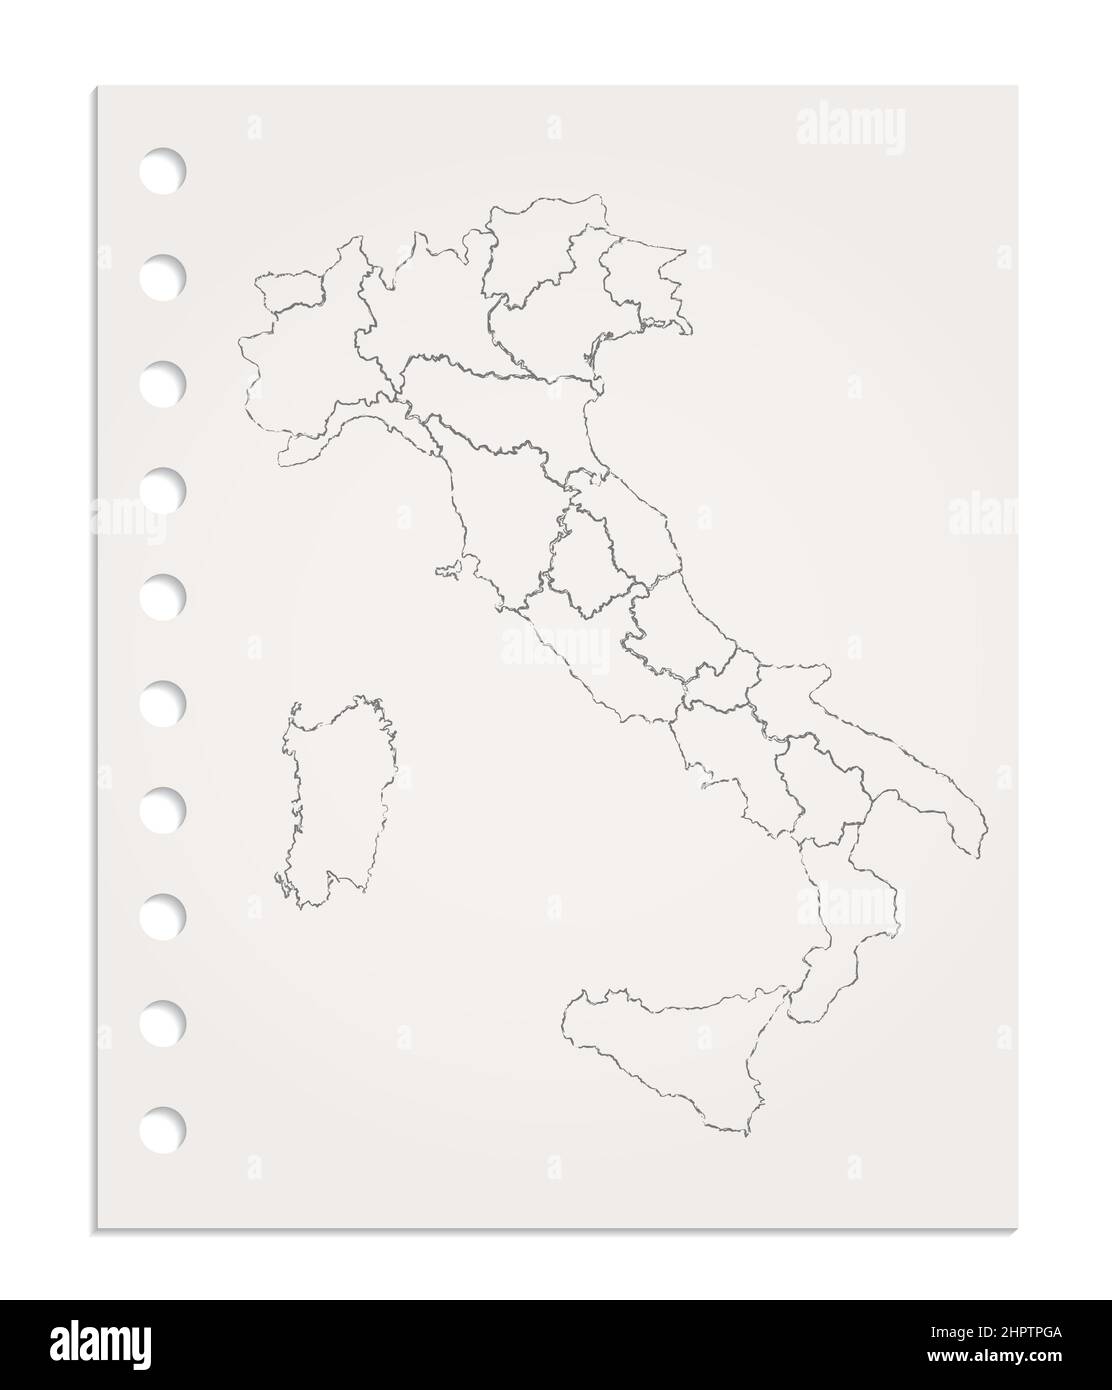 Carte de l'Italie sur une feuille de papier propre et réaliste déchirée du bloc, vierge Banque D'Images